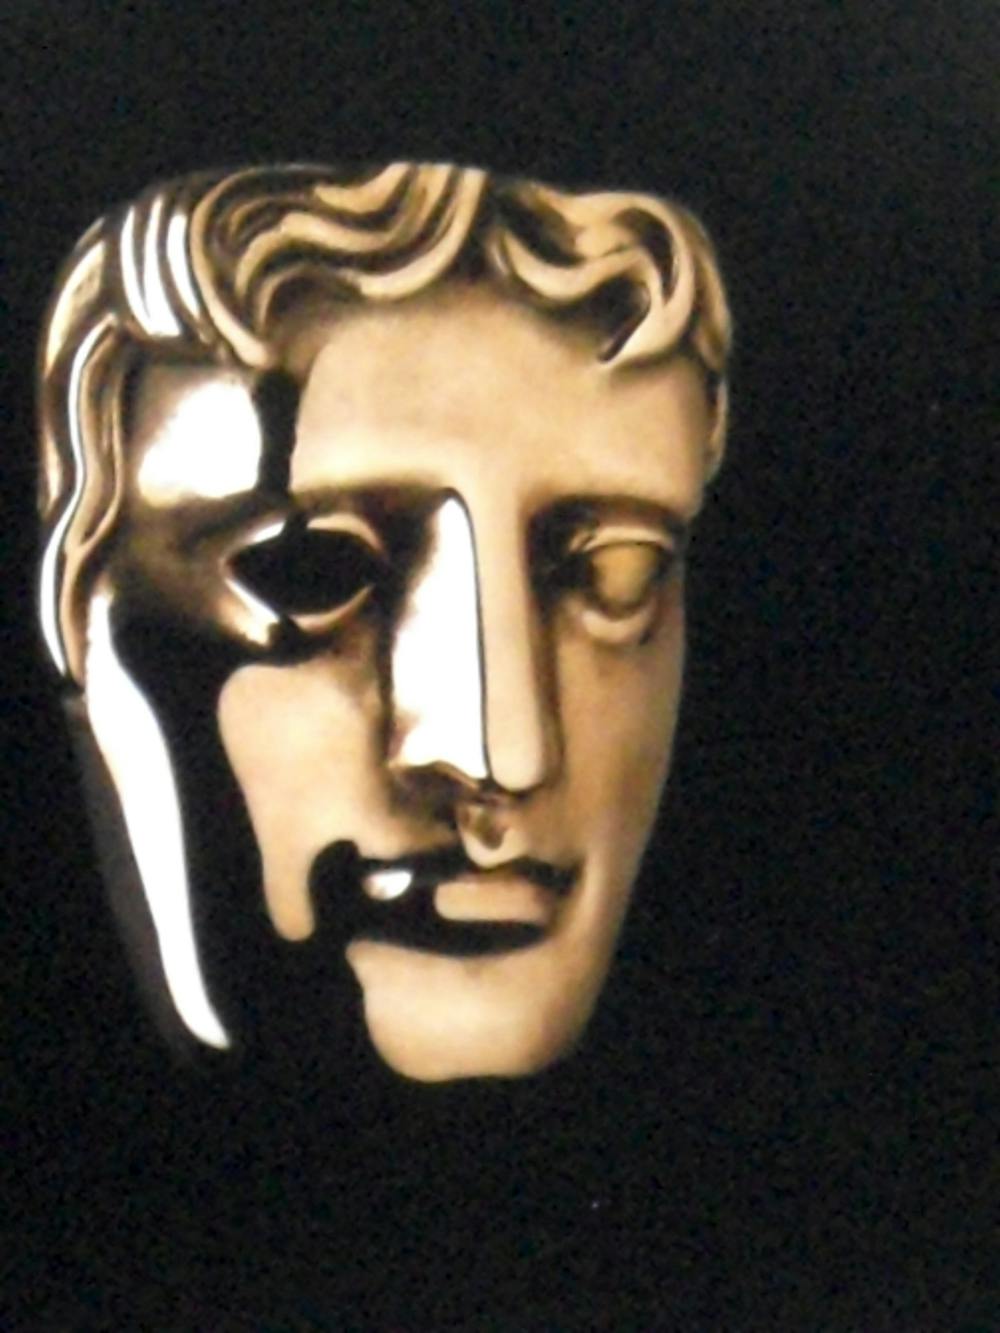 <p><em>The BAFTA Awards is the British equivalent of the Oscars. (Photo courtesy of </em><a href="https://flic.kr/p/6igEJW" target=""><em>Flickr</em></a><em> / Rev Stan, April 26, 2009)</em></p>